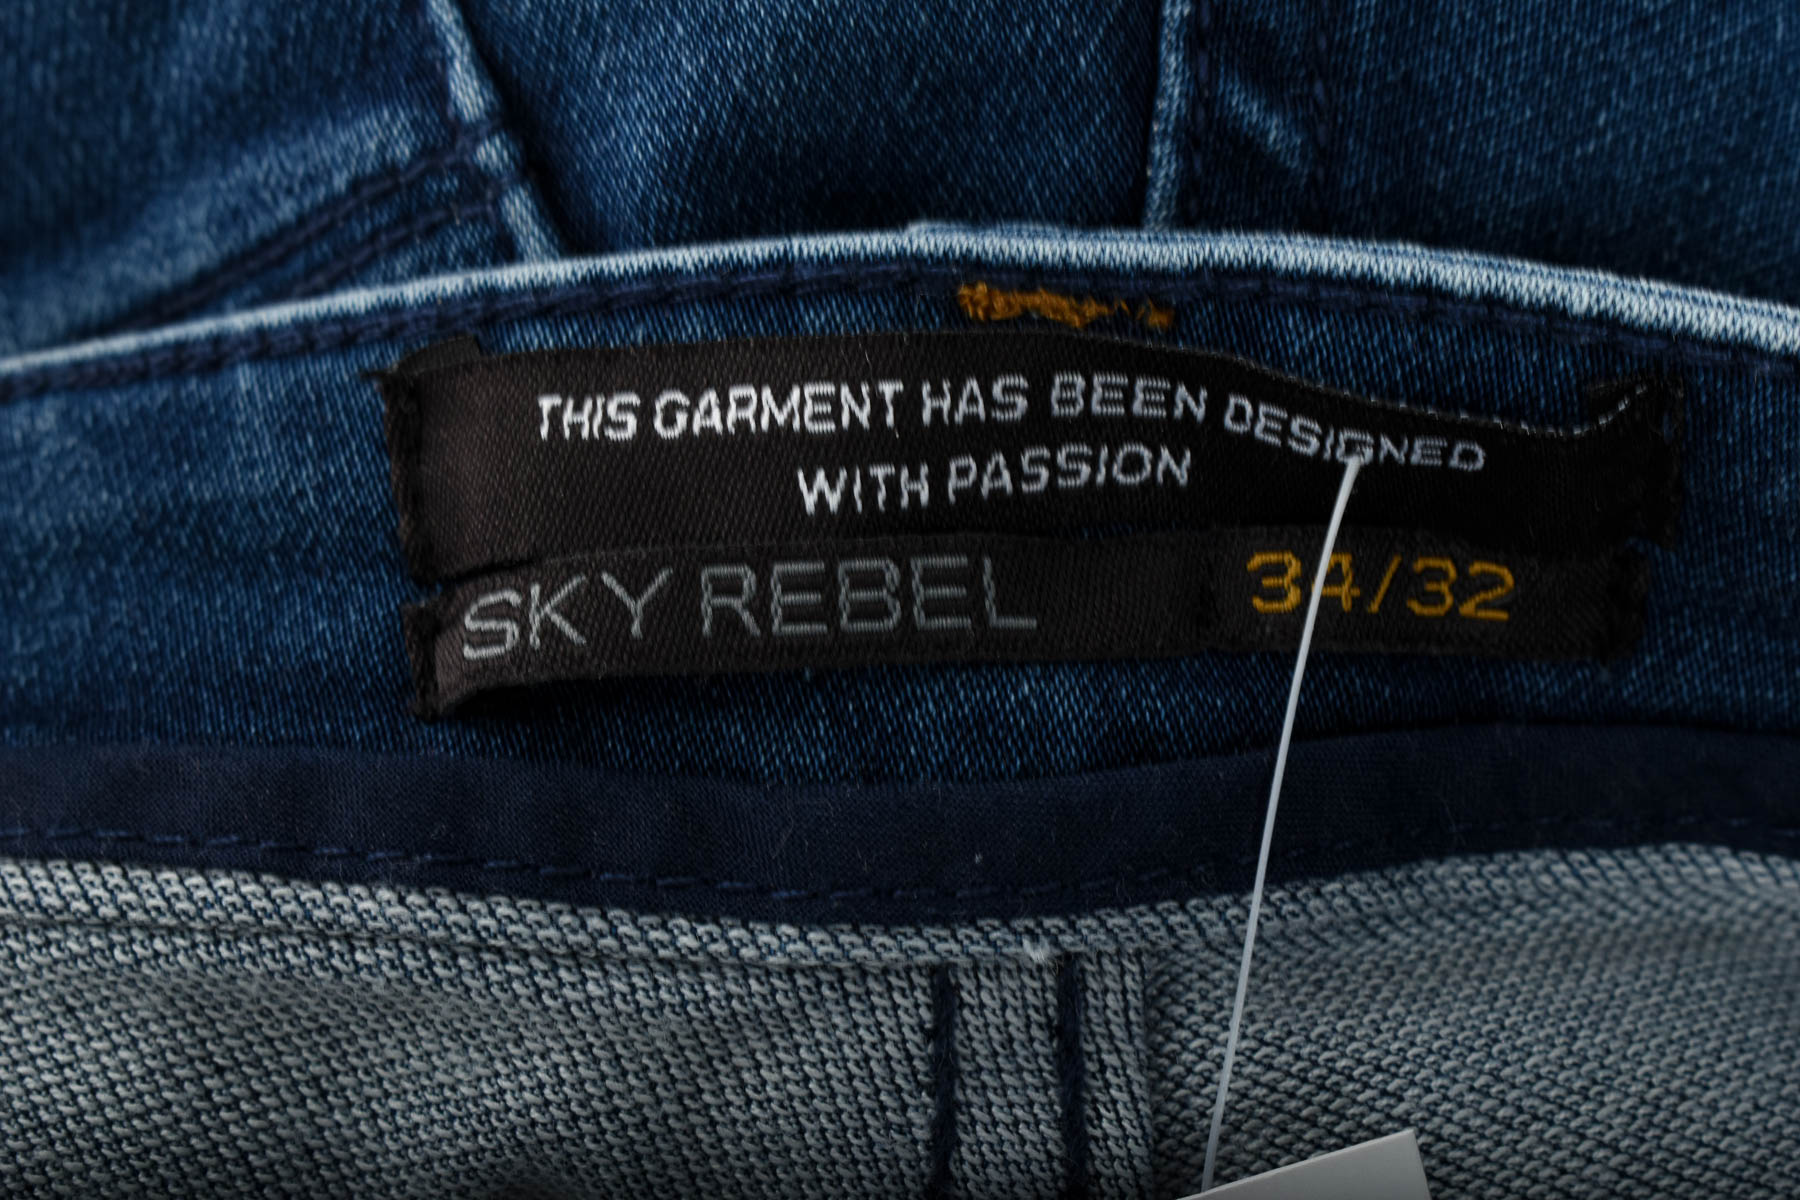 Men's jeans - SKY REBEL - 2